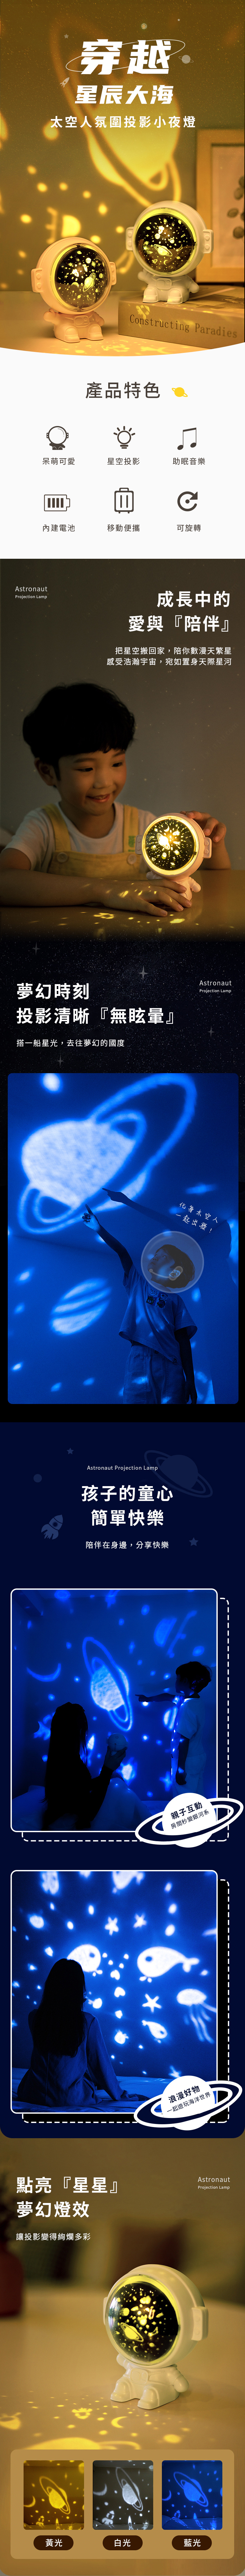 【3/29~5/31畢業季88折優惠】創意小物館 太空人氛圍投影小夜燈 白色